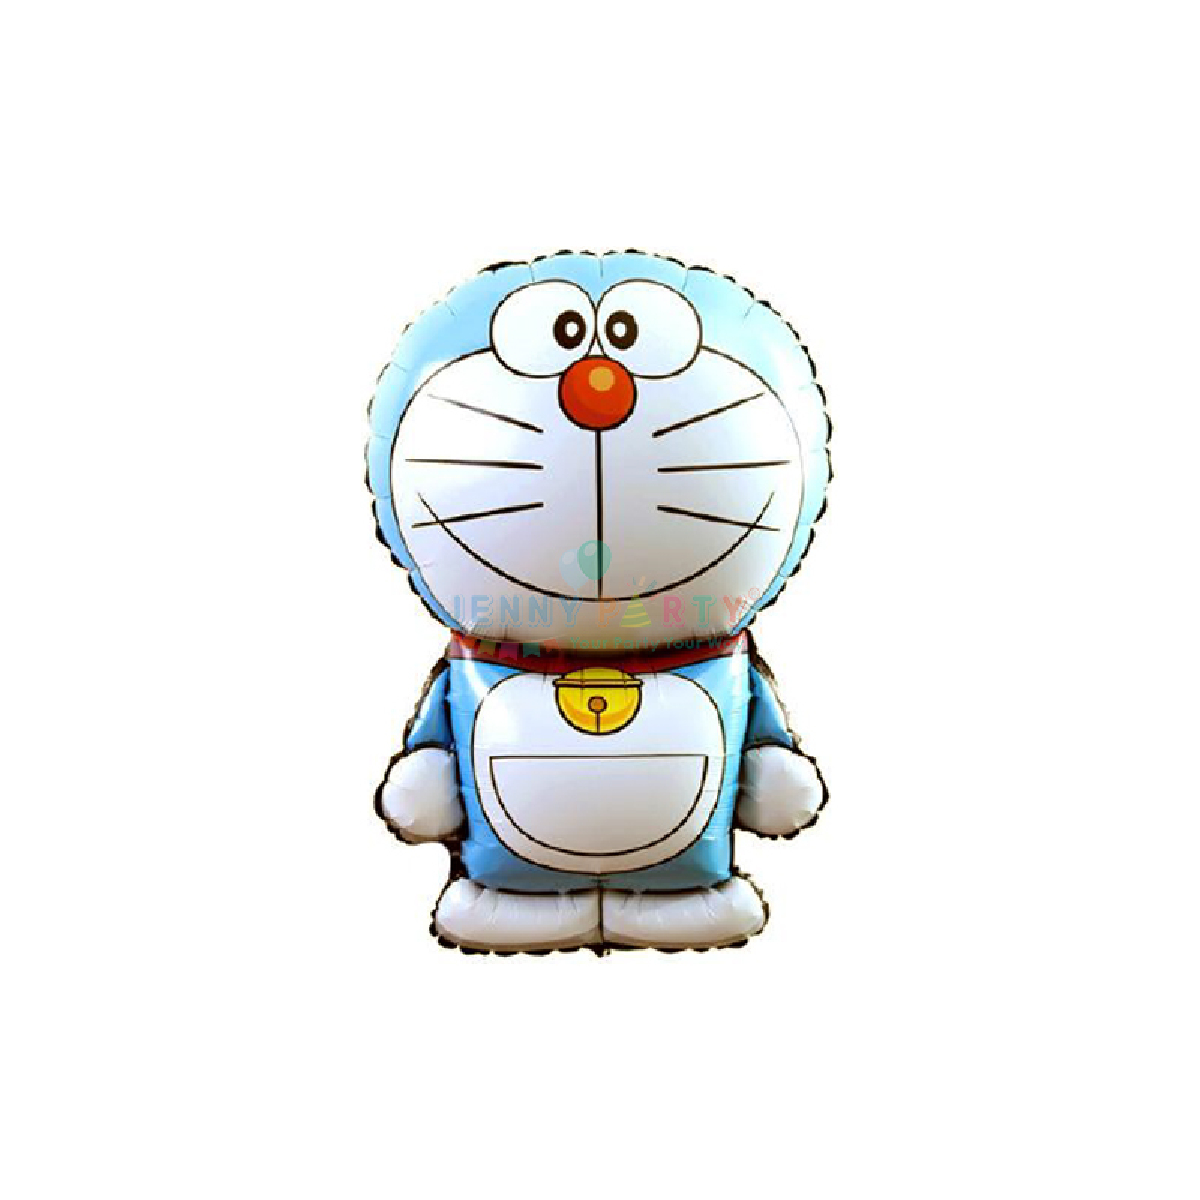 Hình Doraemon là một biểu tượng của tuổi thơ với bộ phim hoạt hình vô cùng nổi tiếng. Hãy xem những hình ảnh Doraemon đáng yêu và hài hước để trở lại tuổi thơ trong bạn!